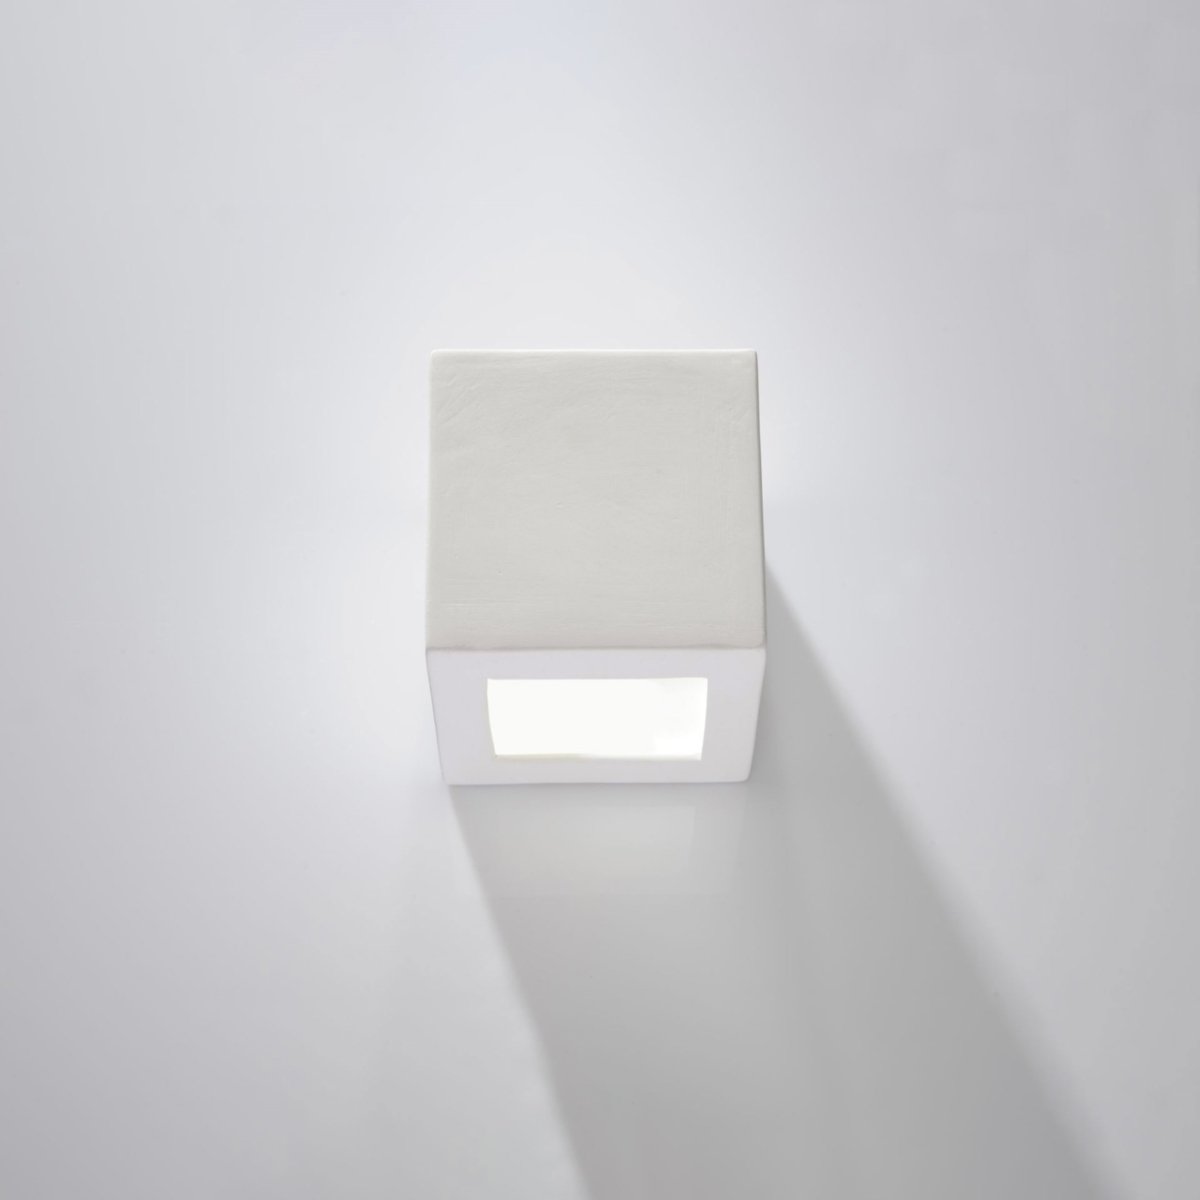 Sieninis šviestuvas SOLLUX LEO baltas, 60 W - 2